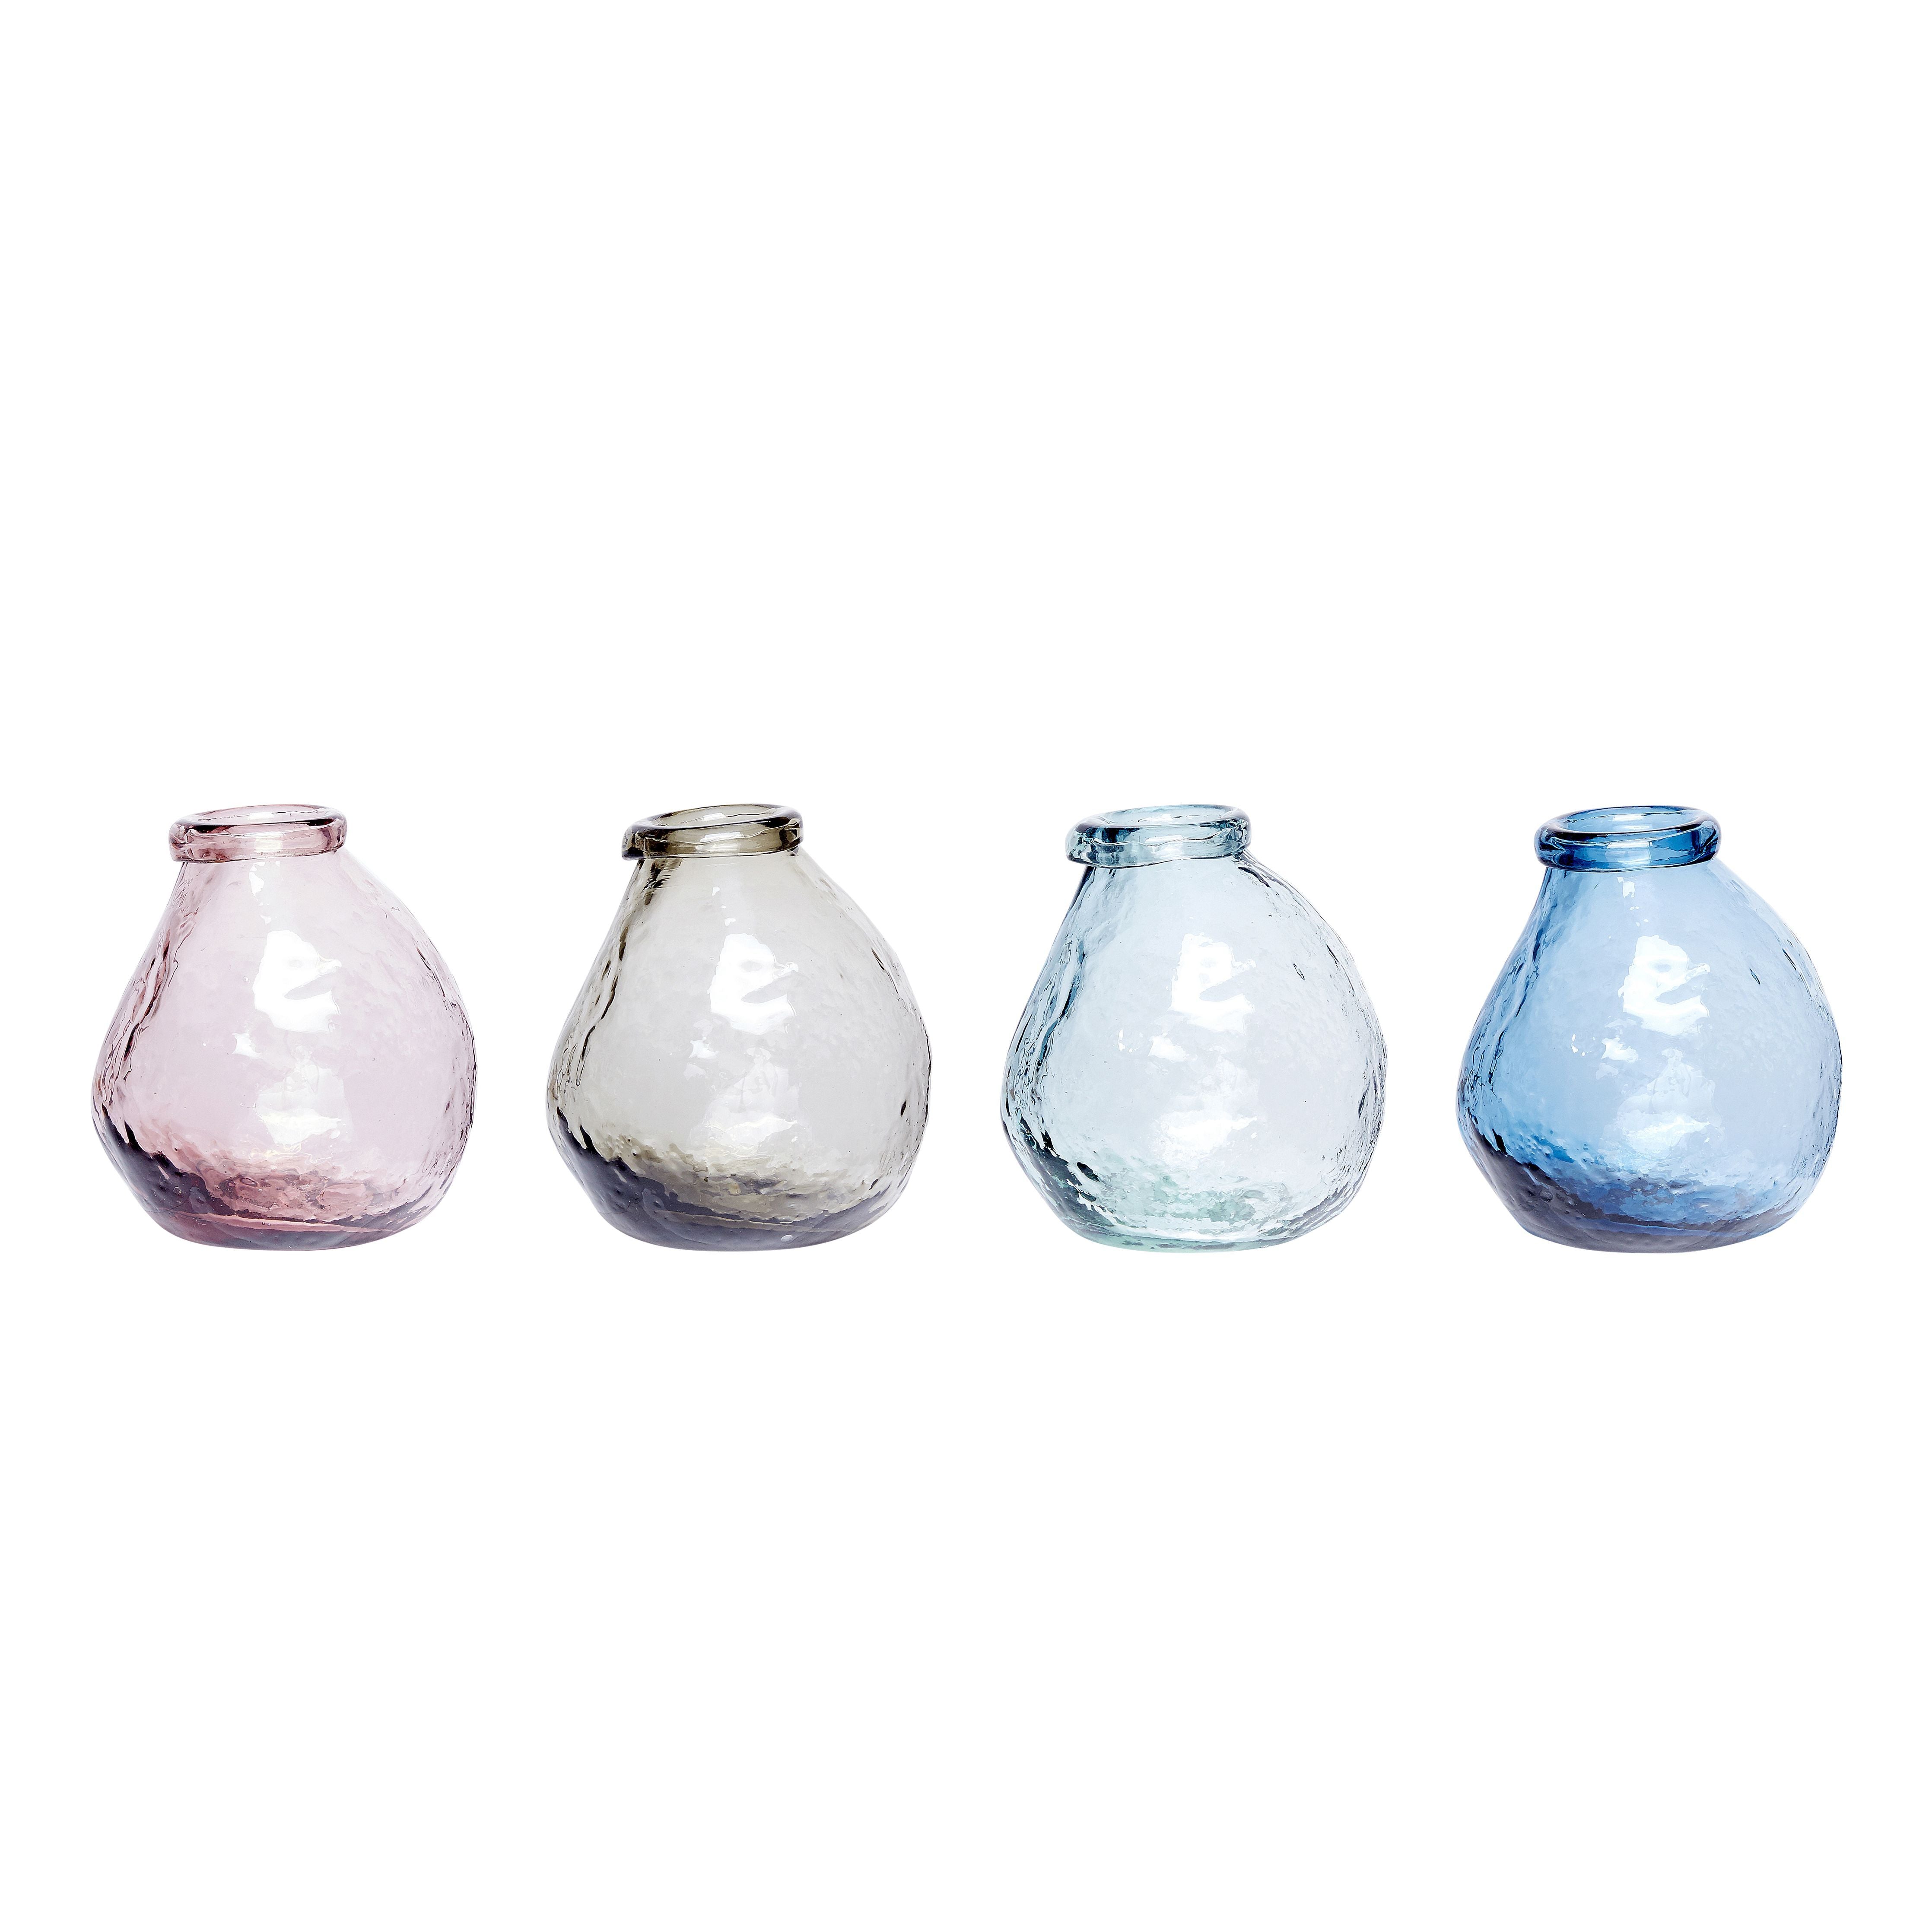 Hübsch vas glasrosa/klar/blå/grå uppsättning av 4, Øx h 10x12 cm